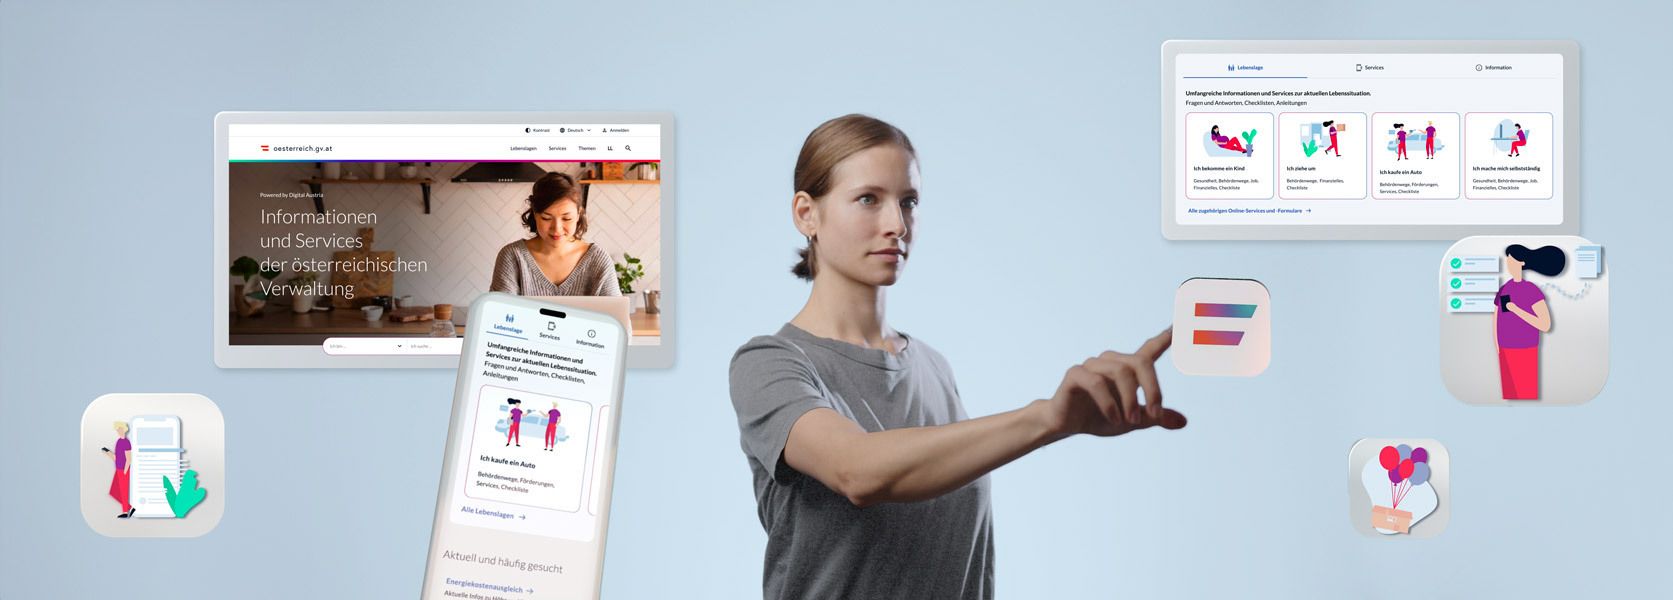 Eine Frau drückt auf ein vor ihr schwebendes Digital Austria-Icon. Daneben sind vor einem blauen Hintergrund verteilt verschieden Mockups und Icons von Websites des österreichischen eGovernment.